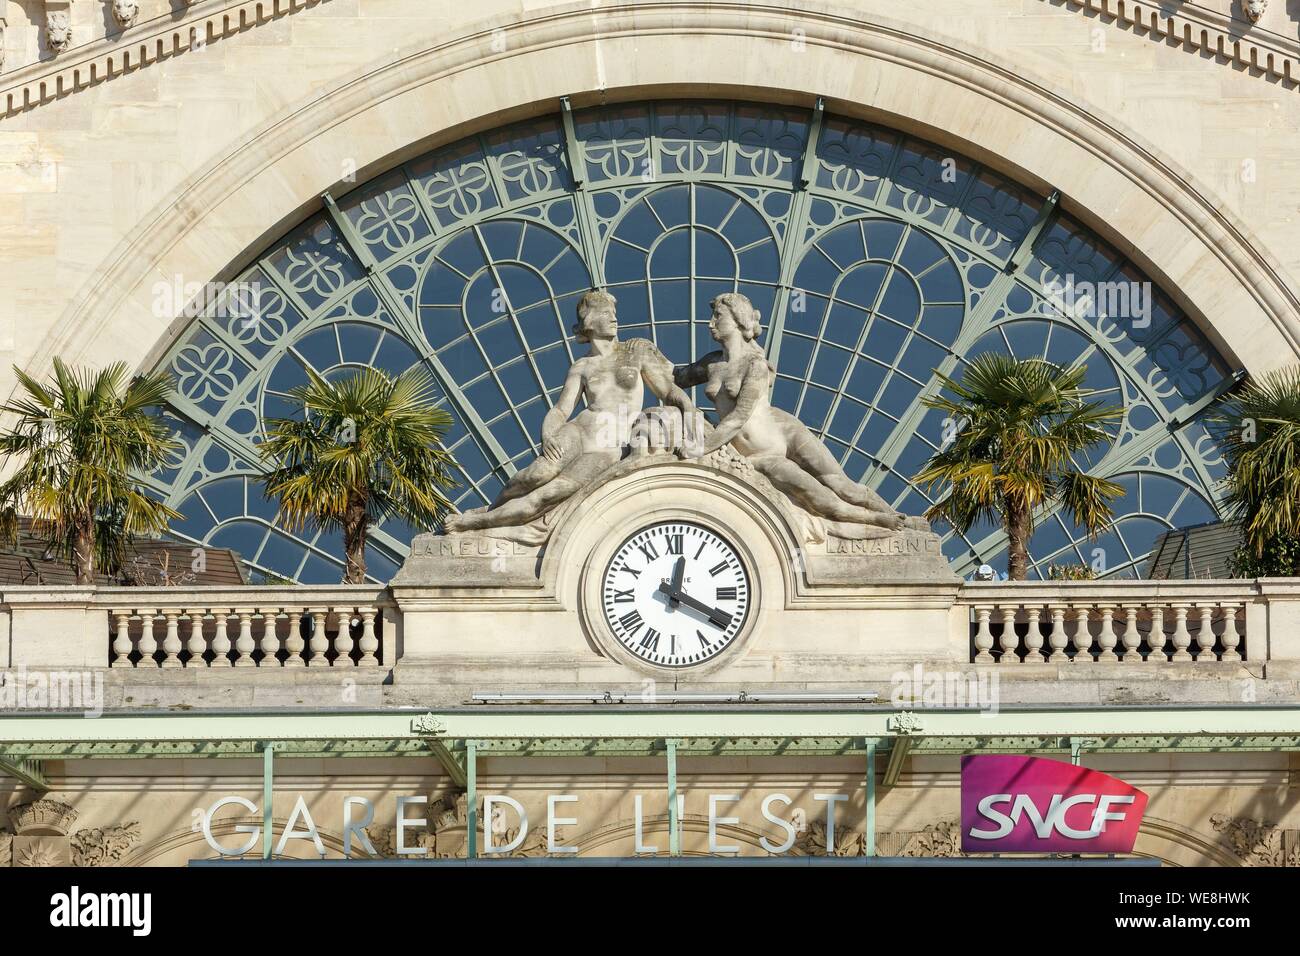 Frankreich, Paris, Gare de Paris-Est oder Gare de l'Est (von Osten), ist einer der sechs großen SNCF Bahnhof Termini in Paris, im Jahre 1849 geöffnet und die Arbeit des Architekten Francois-Alexandre Duquesney, Detail der östlichen Fassade Stockfoto